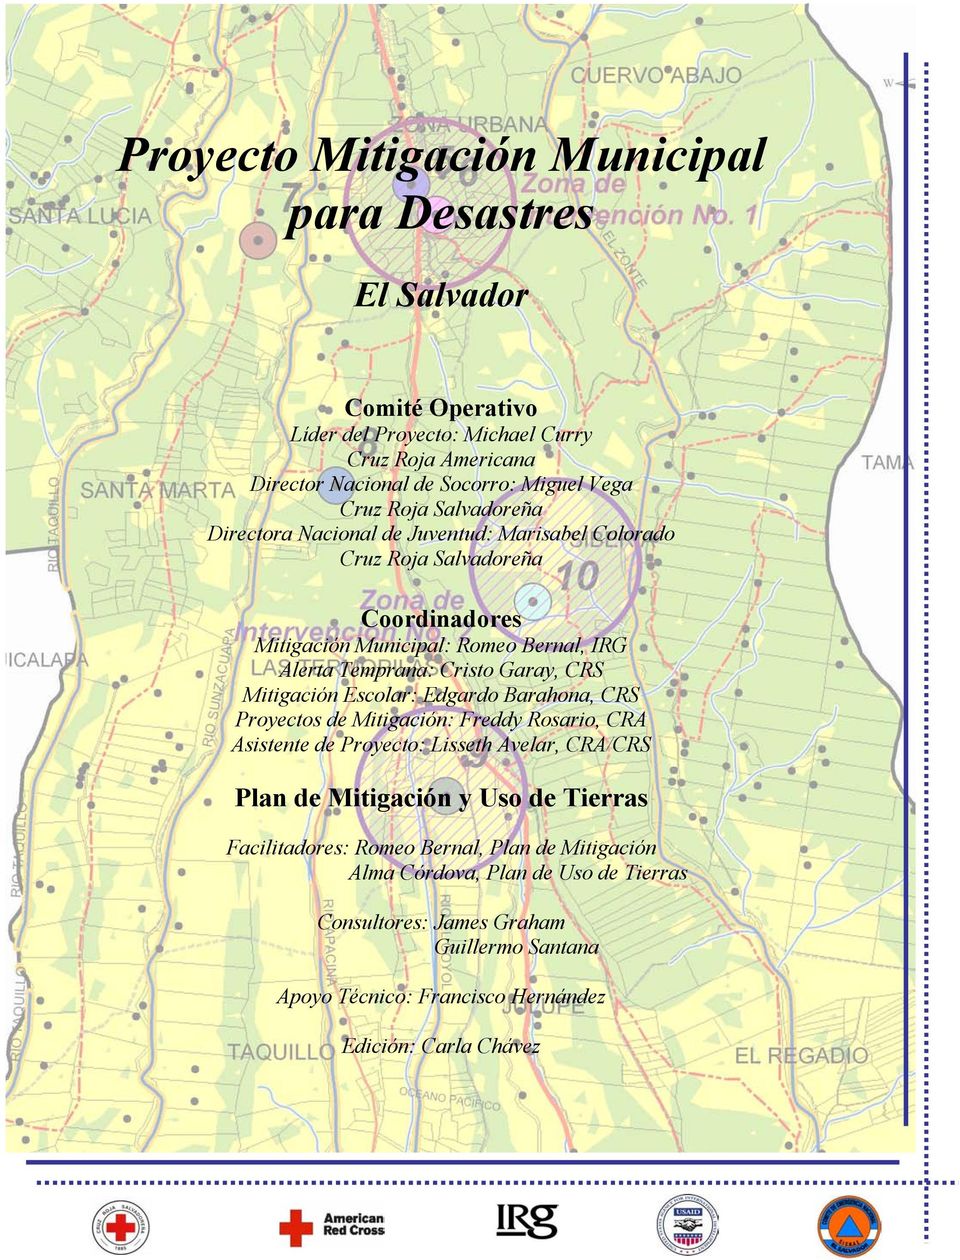 CRS Mitigación Escolar: Edgardo Barahona, CRS Proyectos de Mitigación: Freddy Rosario, CRA Asistente de Proyecto: Lisseth Avelar, CRA/CRS Plan de Mitigación y Uso de Tierras